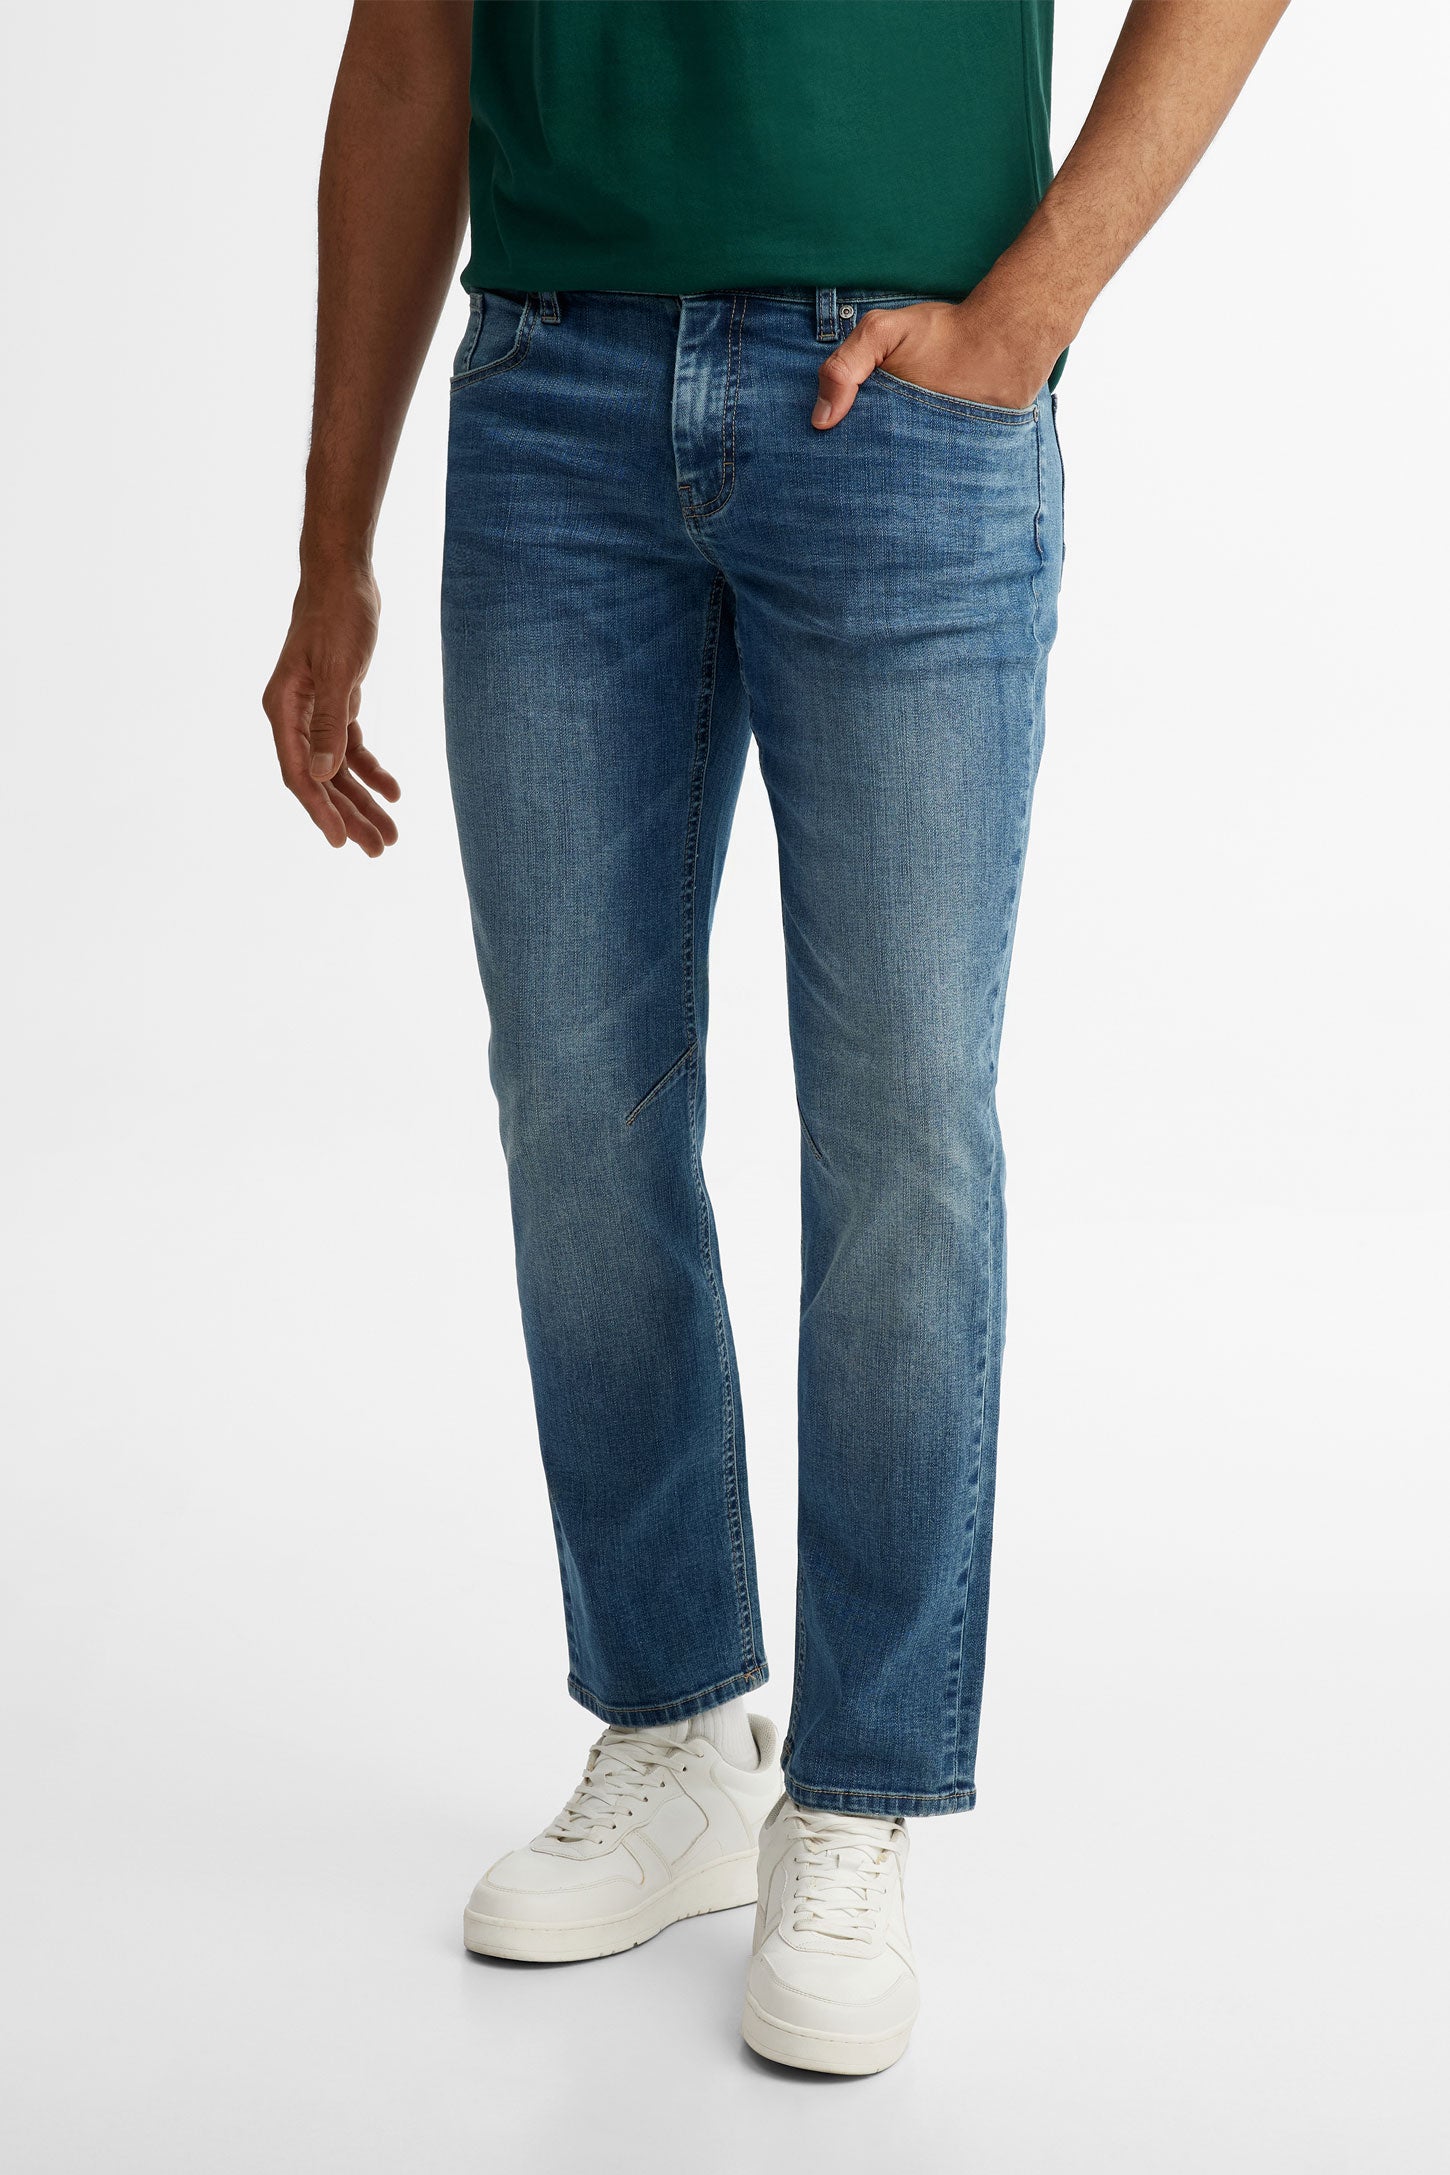 Jeans 5 poches délavé jambe droite - Homme && BLEU FONCE